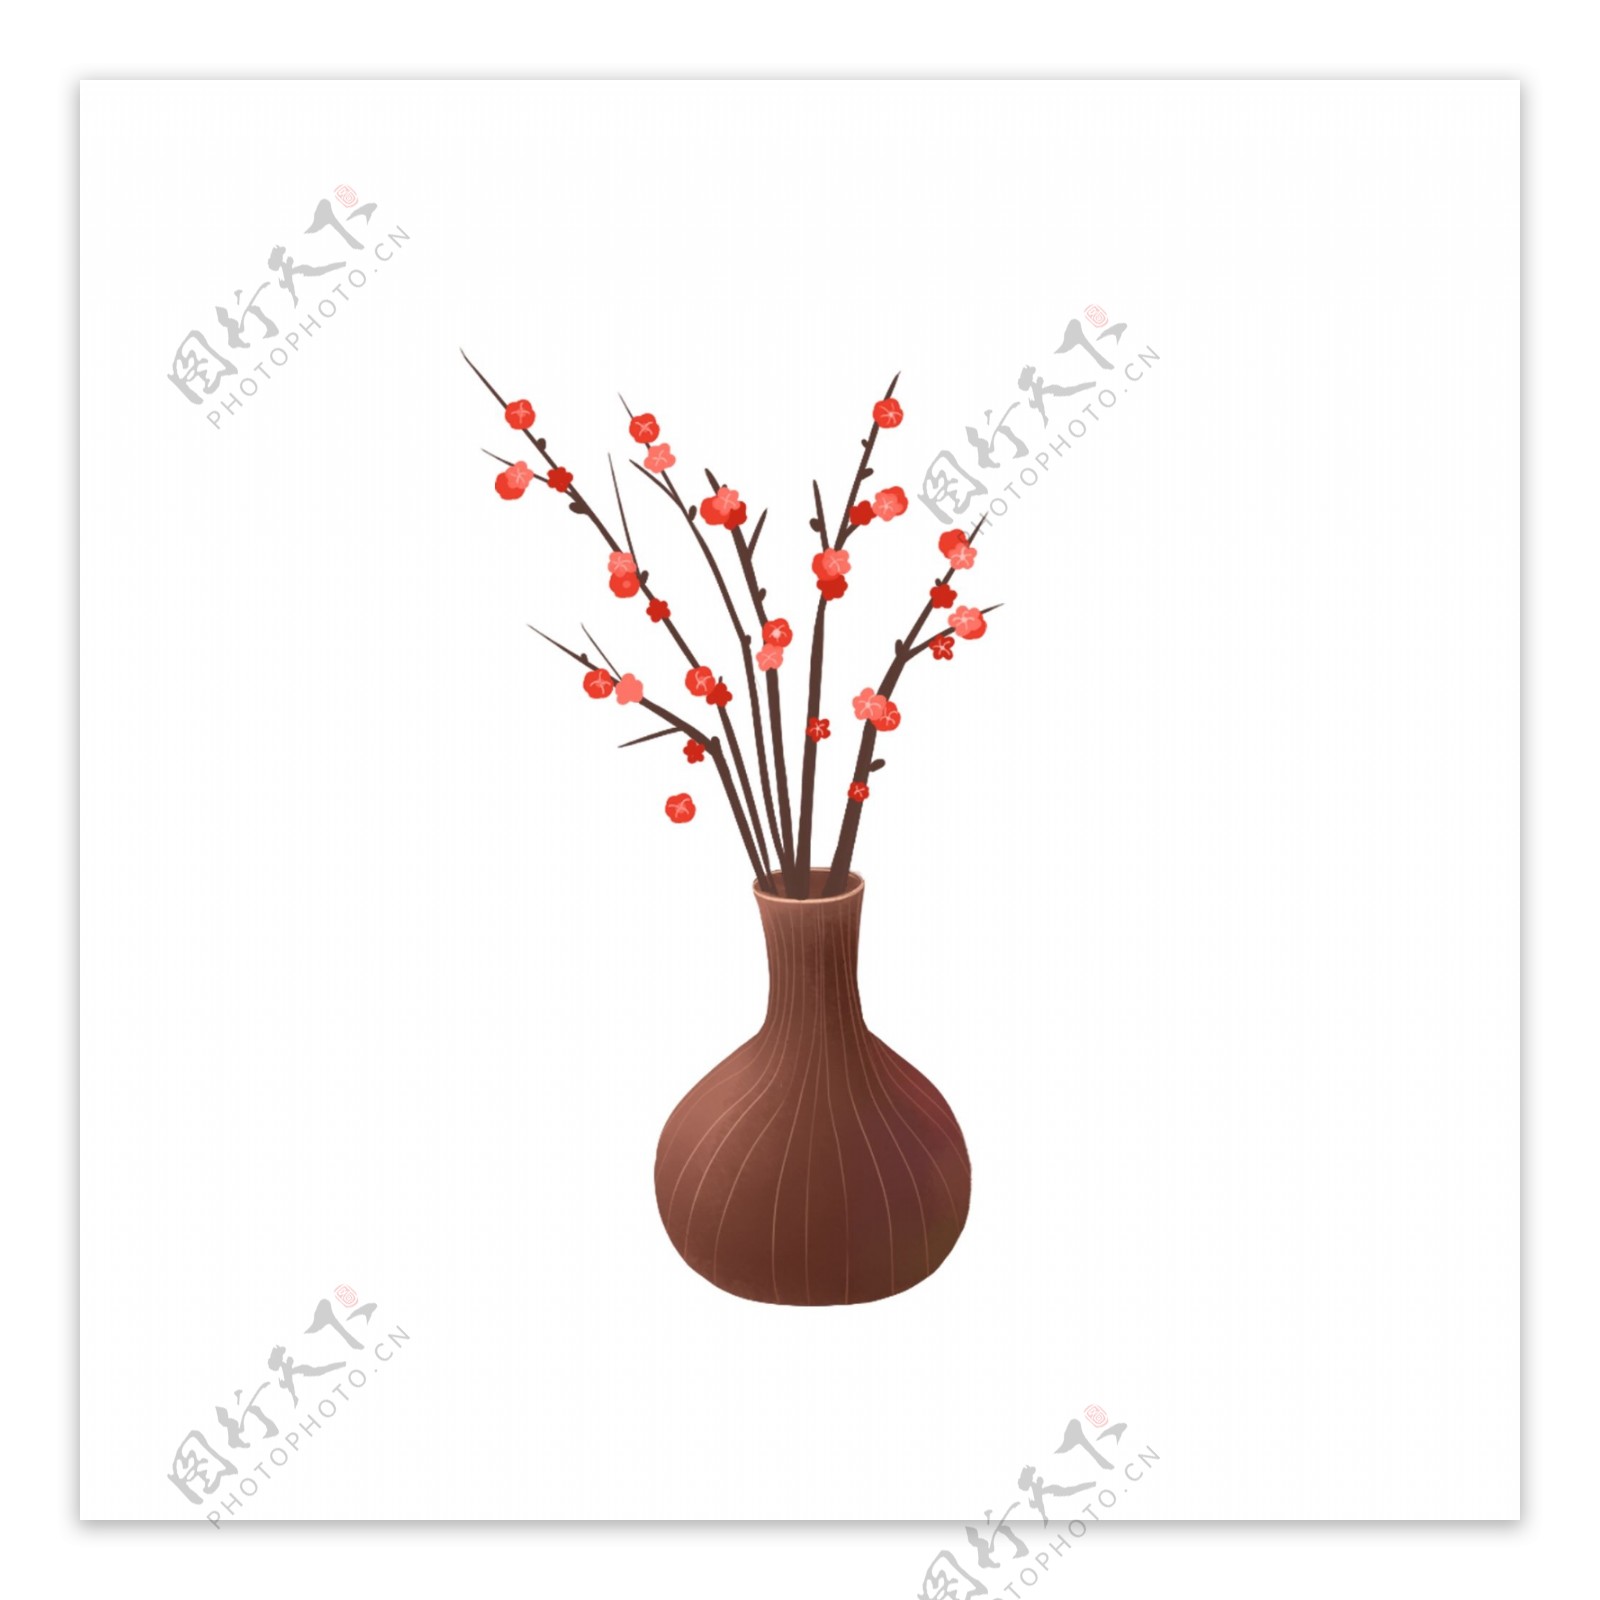 中国风梅花和花瓶设计可商用元素